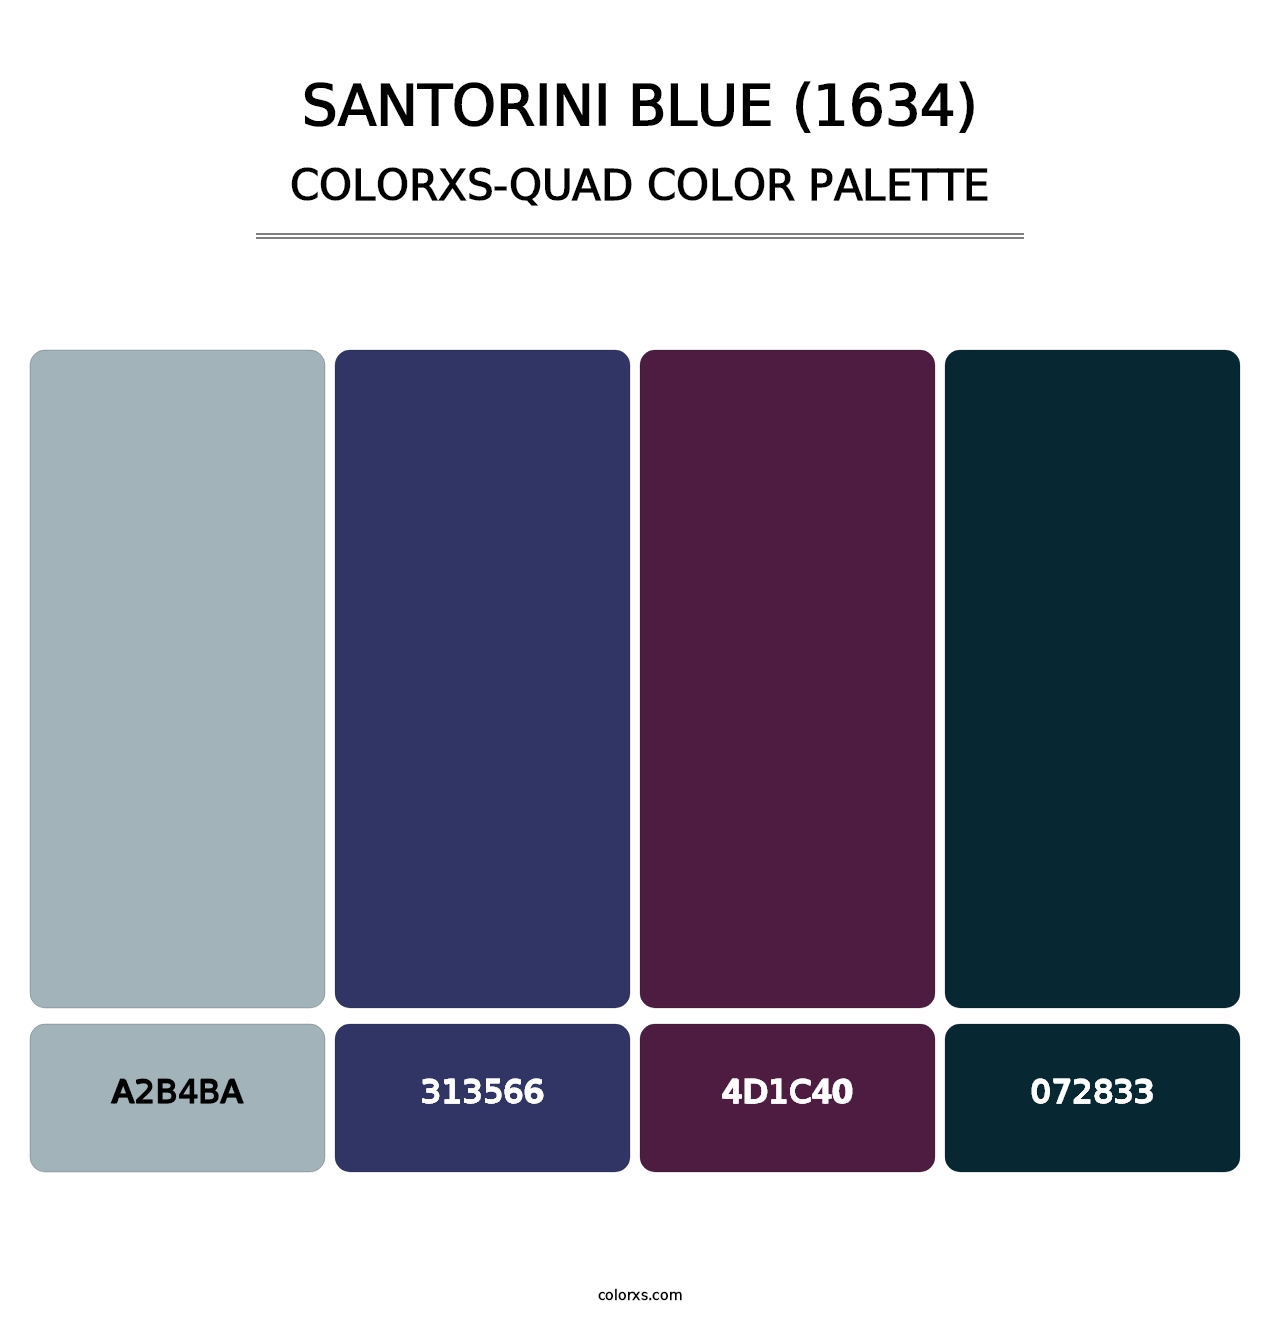 Santorini Blue (1634) - Colorxs Quad Palette